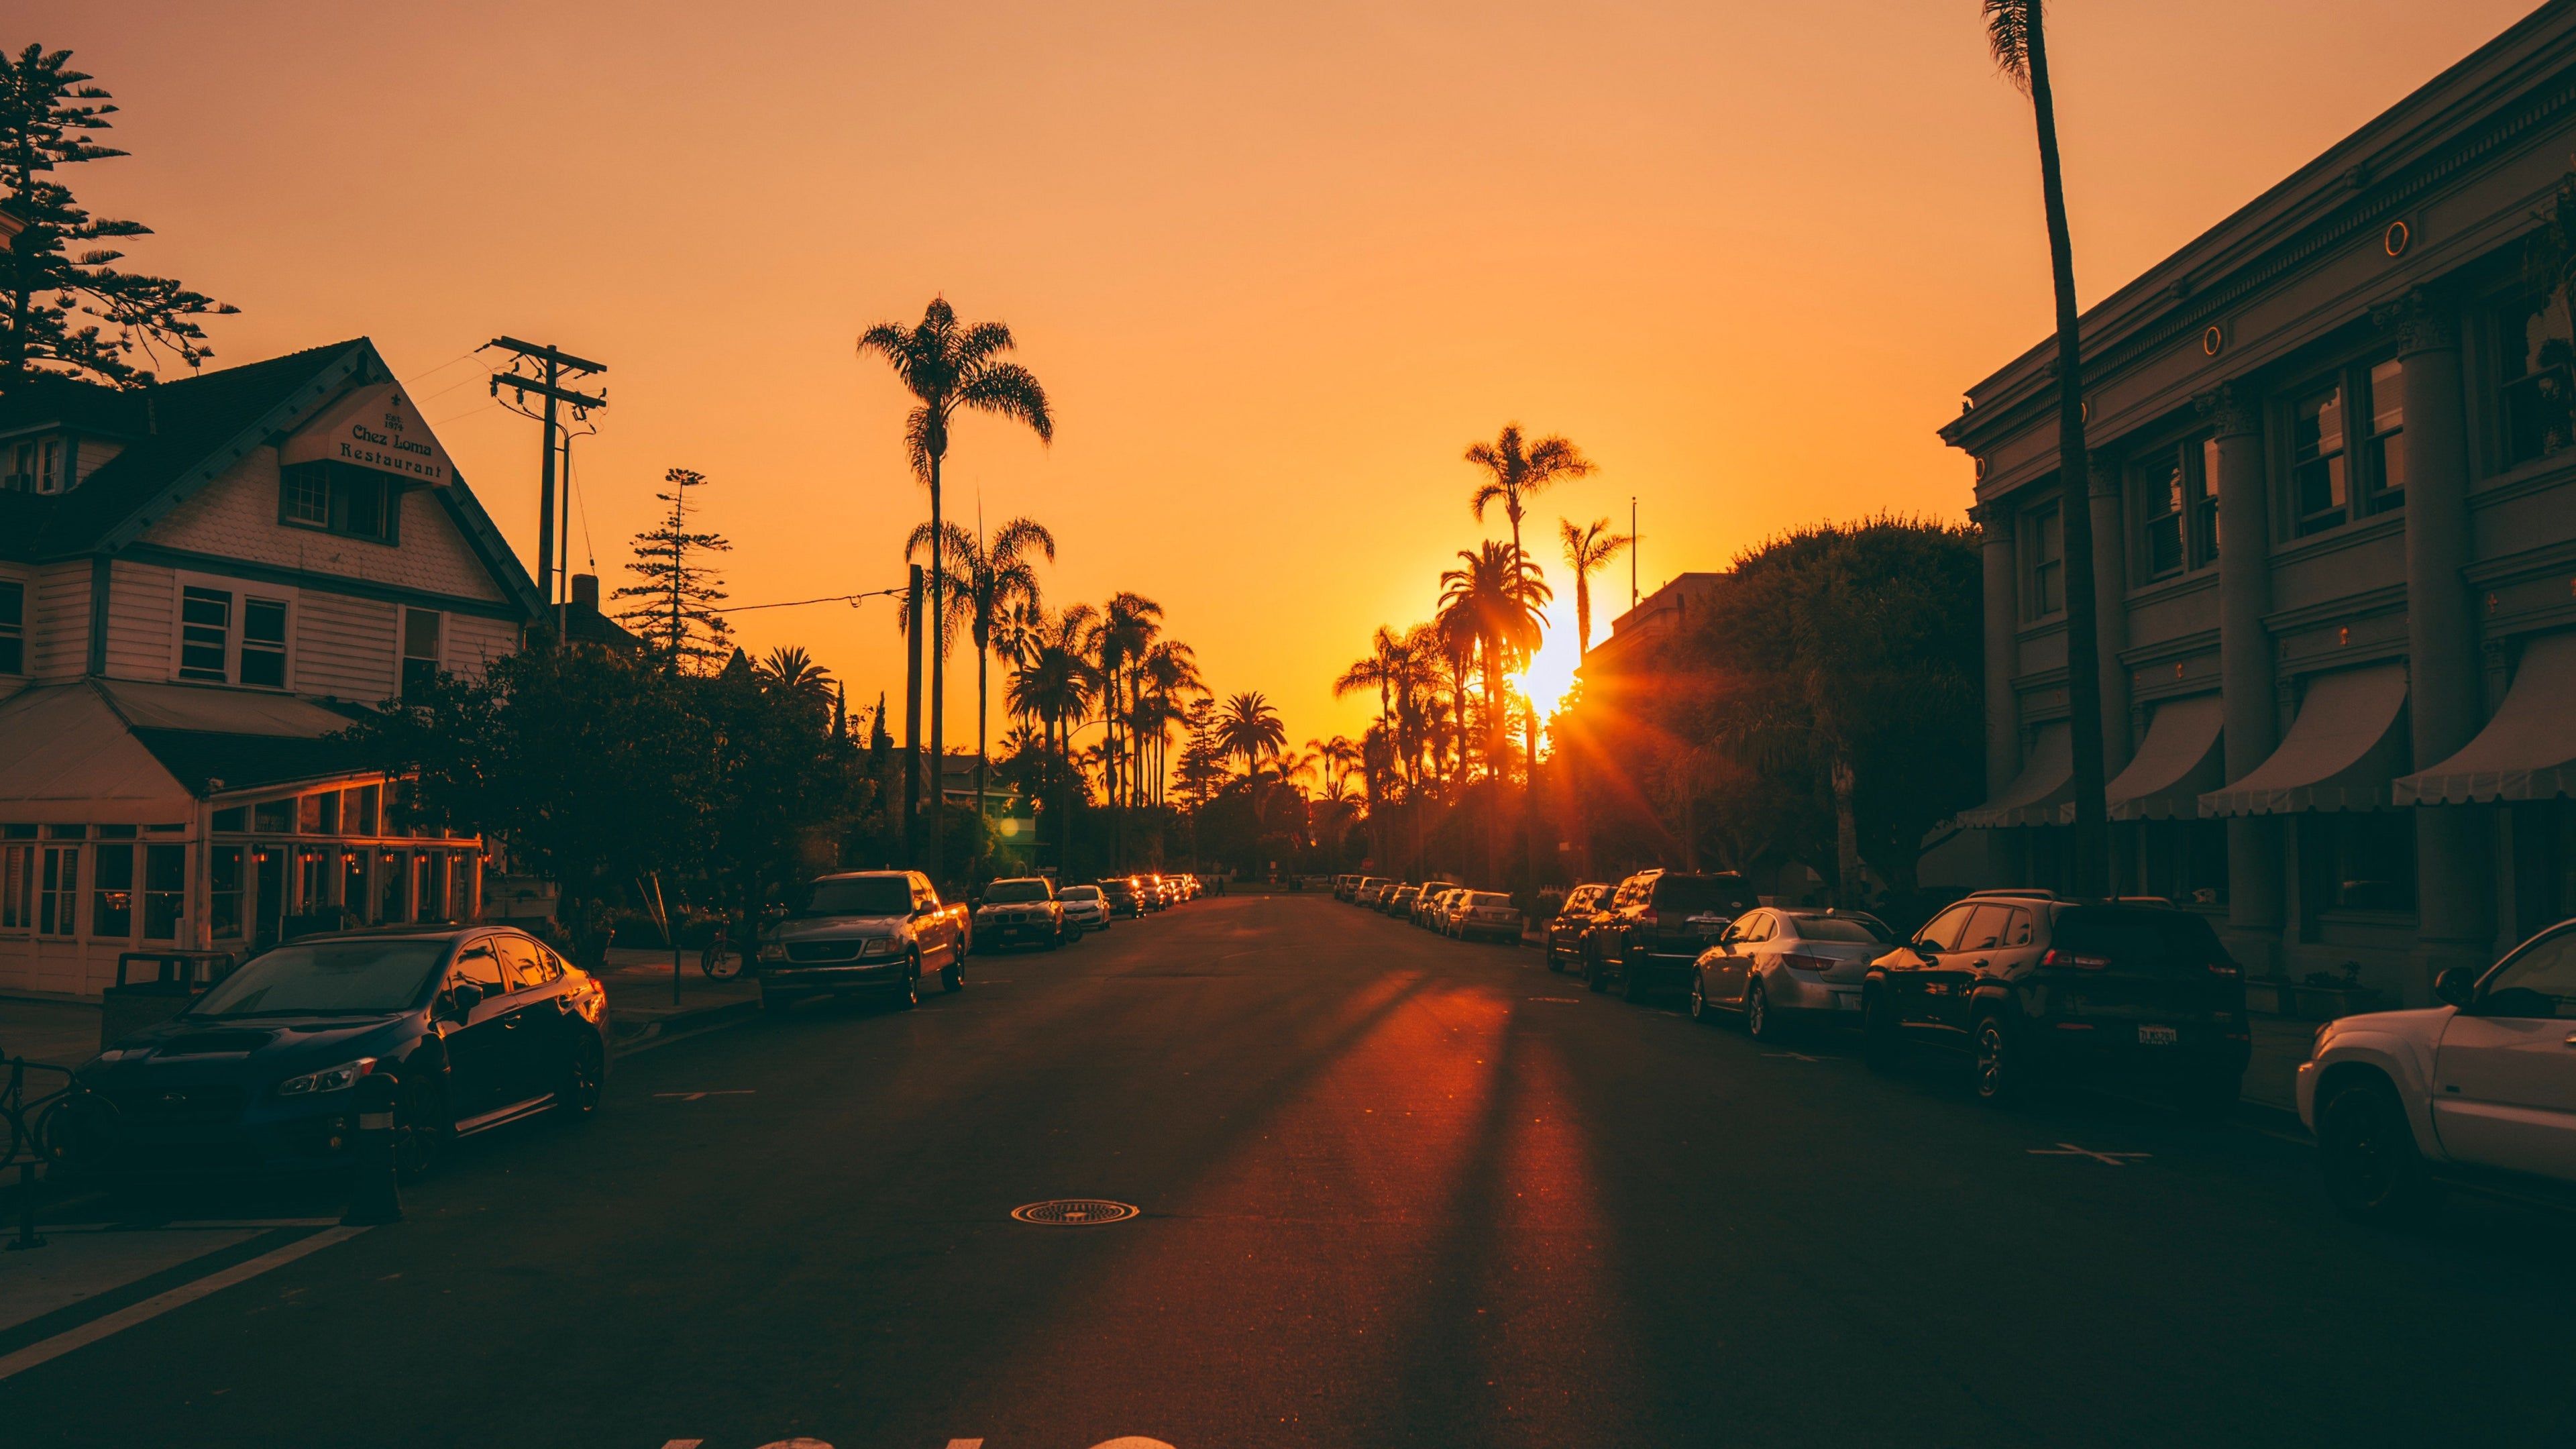 والپیپر رویایی از خیابان های شهر لس آنجلس با درختان نخل دم روباهی لحظه غروب آفتاب